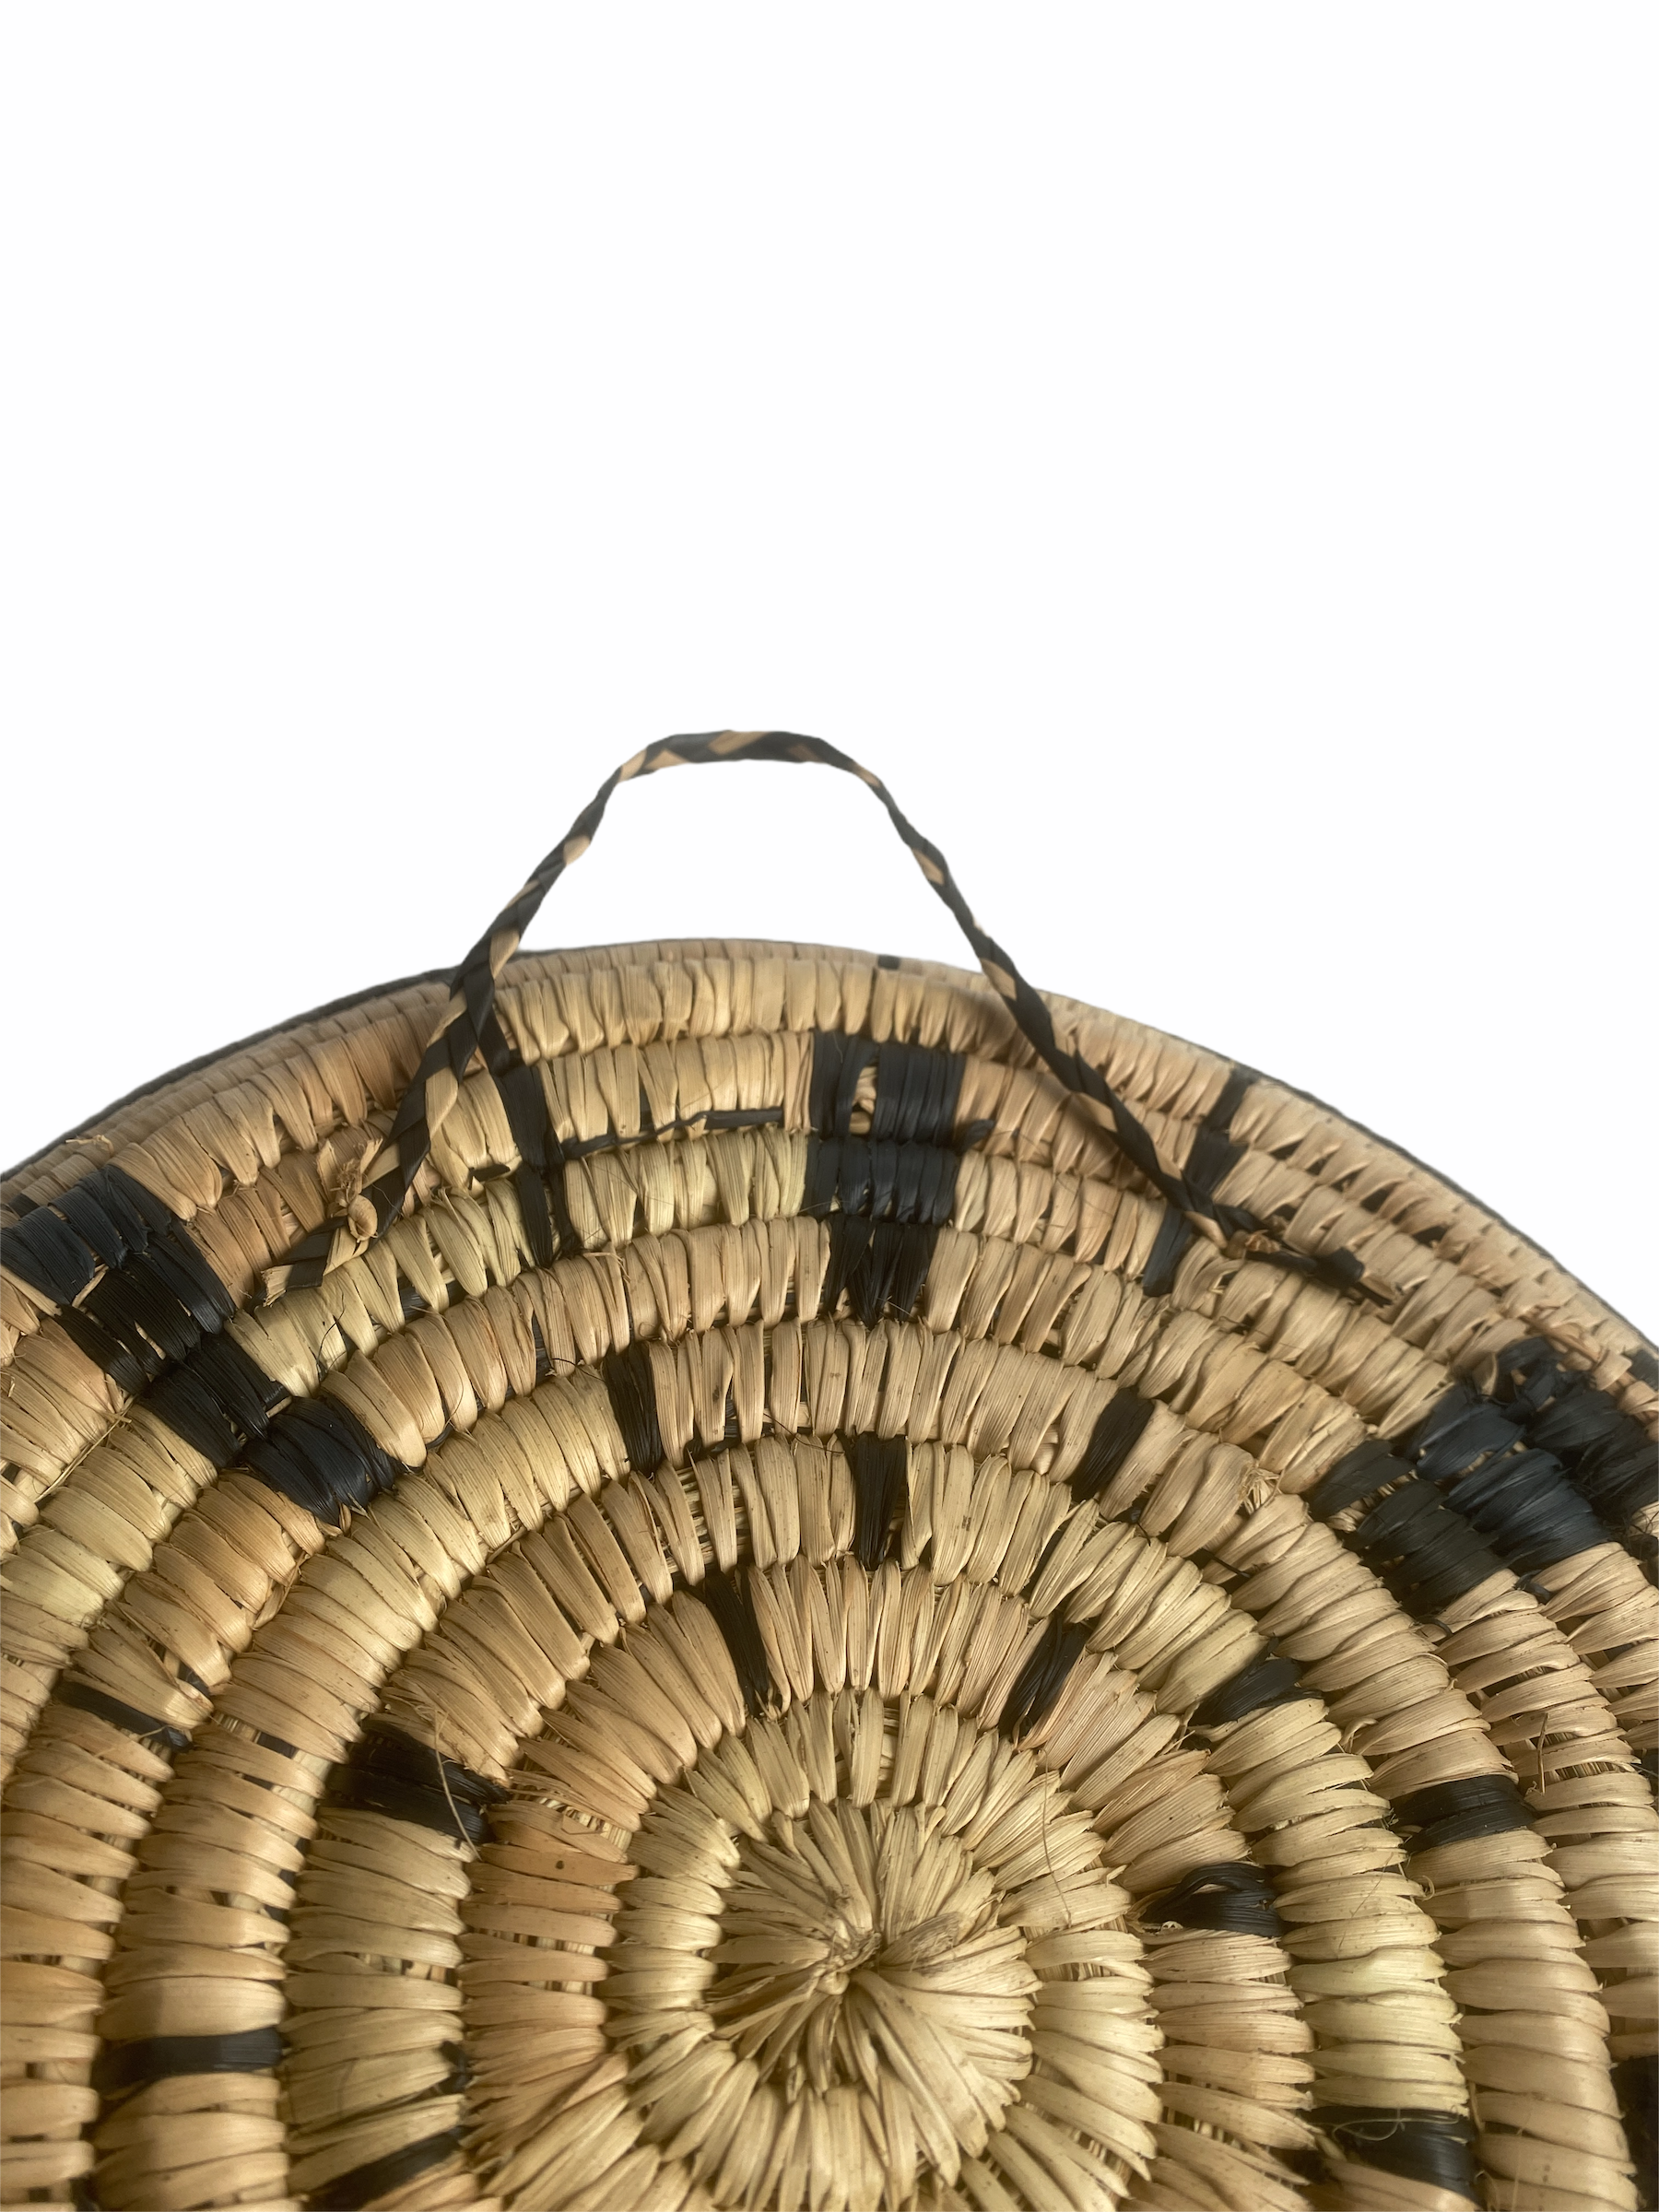 Malawi Wall Basket - 50cm